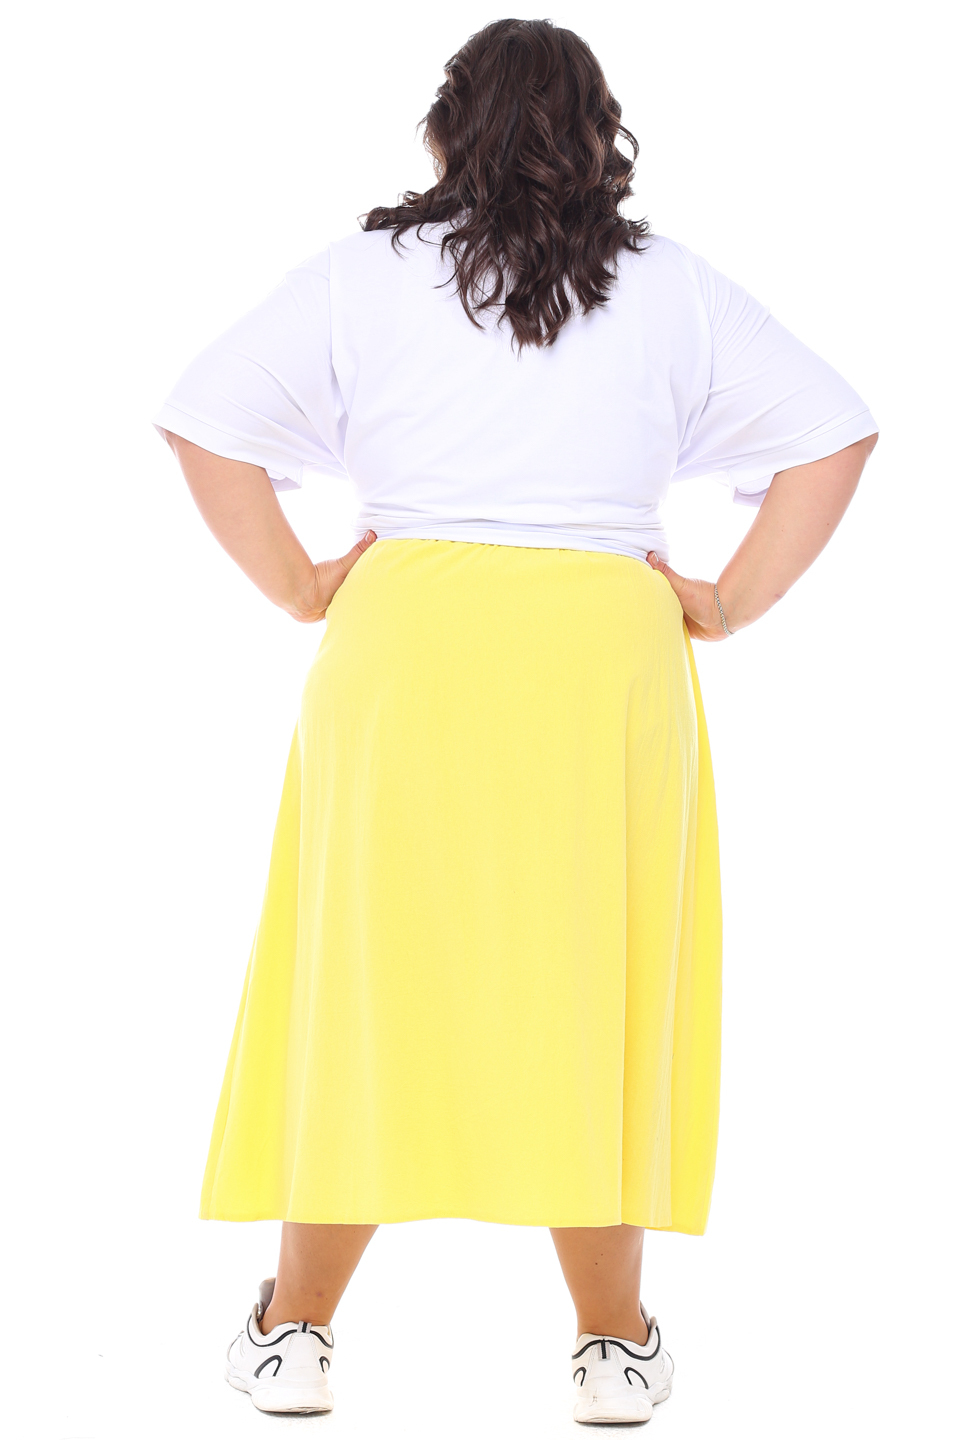 С чем носить желтую юбку: как создать яркий и солнечный лук, фото-подборка модных образов